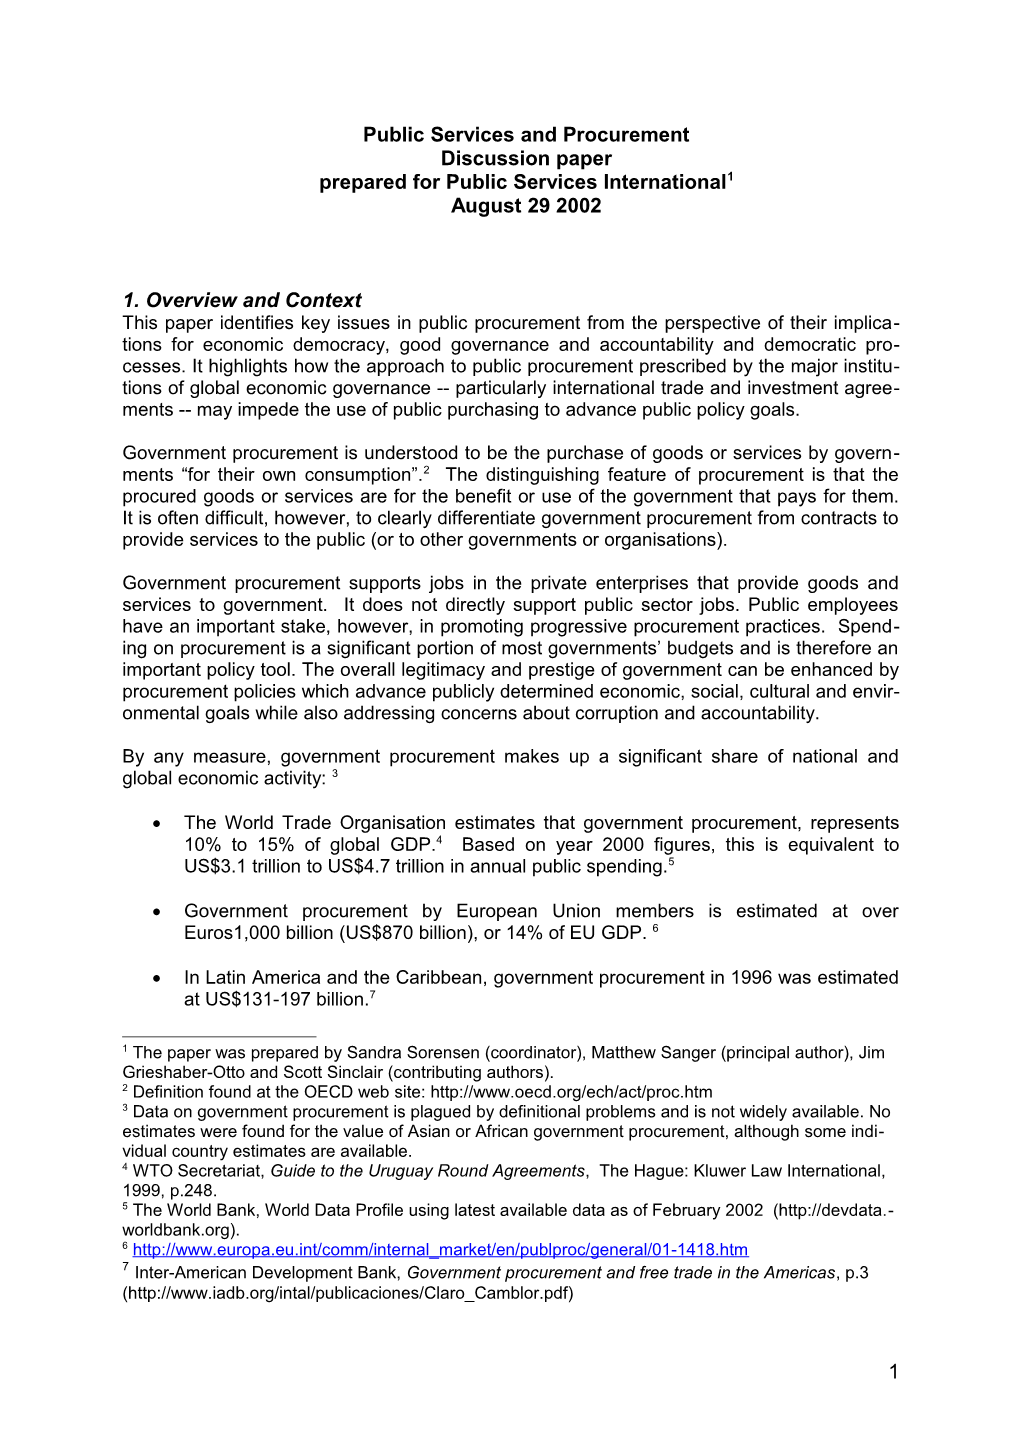 Public Services and Procurement - Discussion Paper